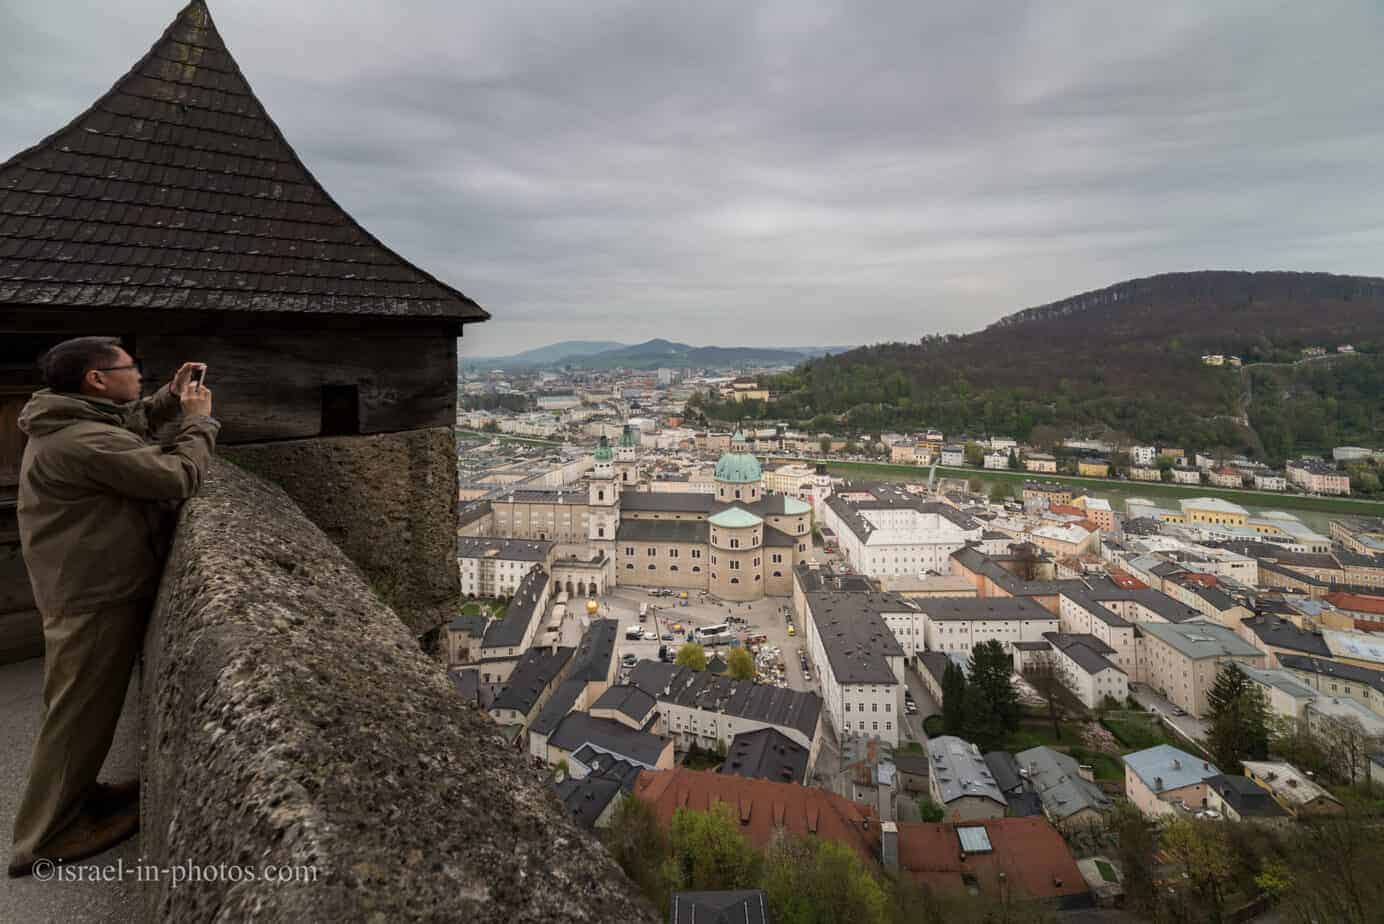 At Fortress Hohensalzburg in Salzburg, Austria